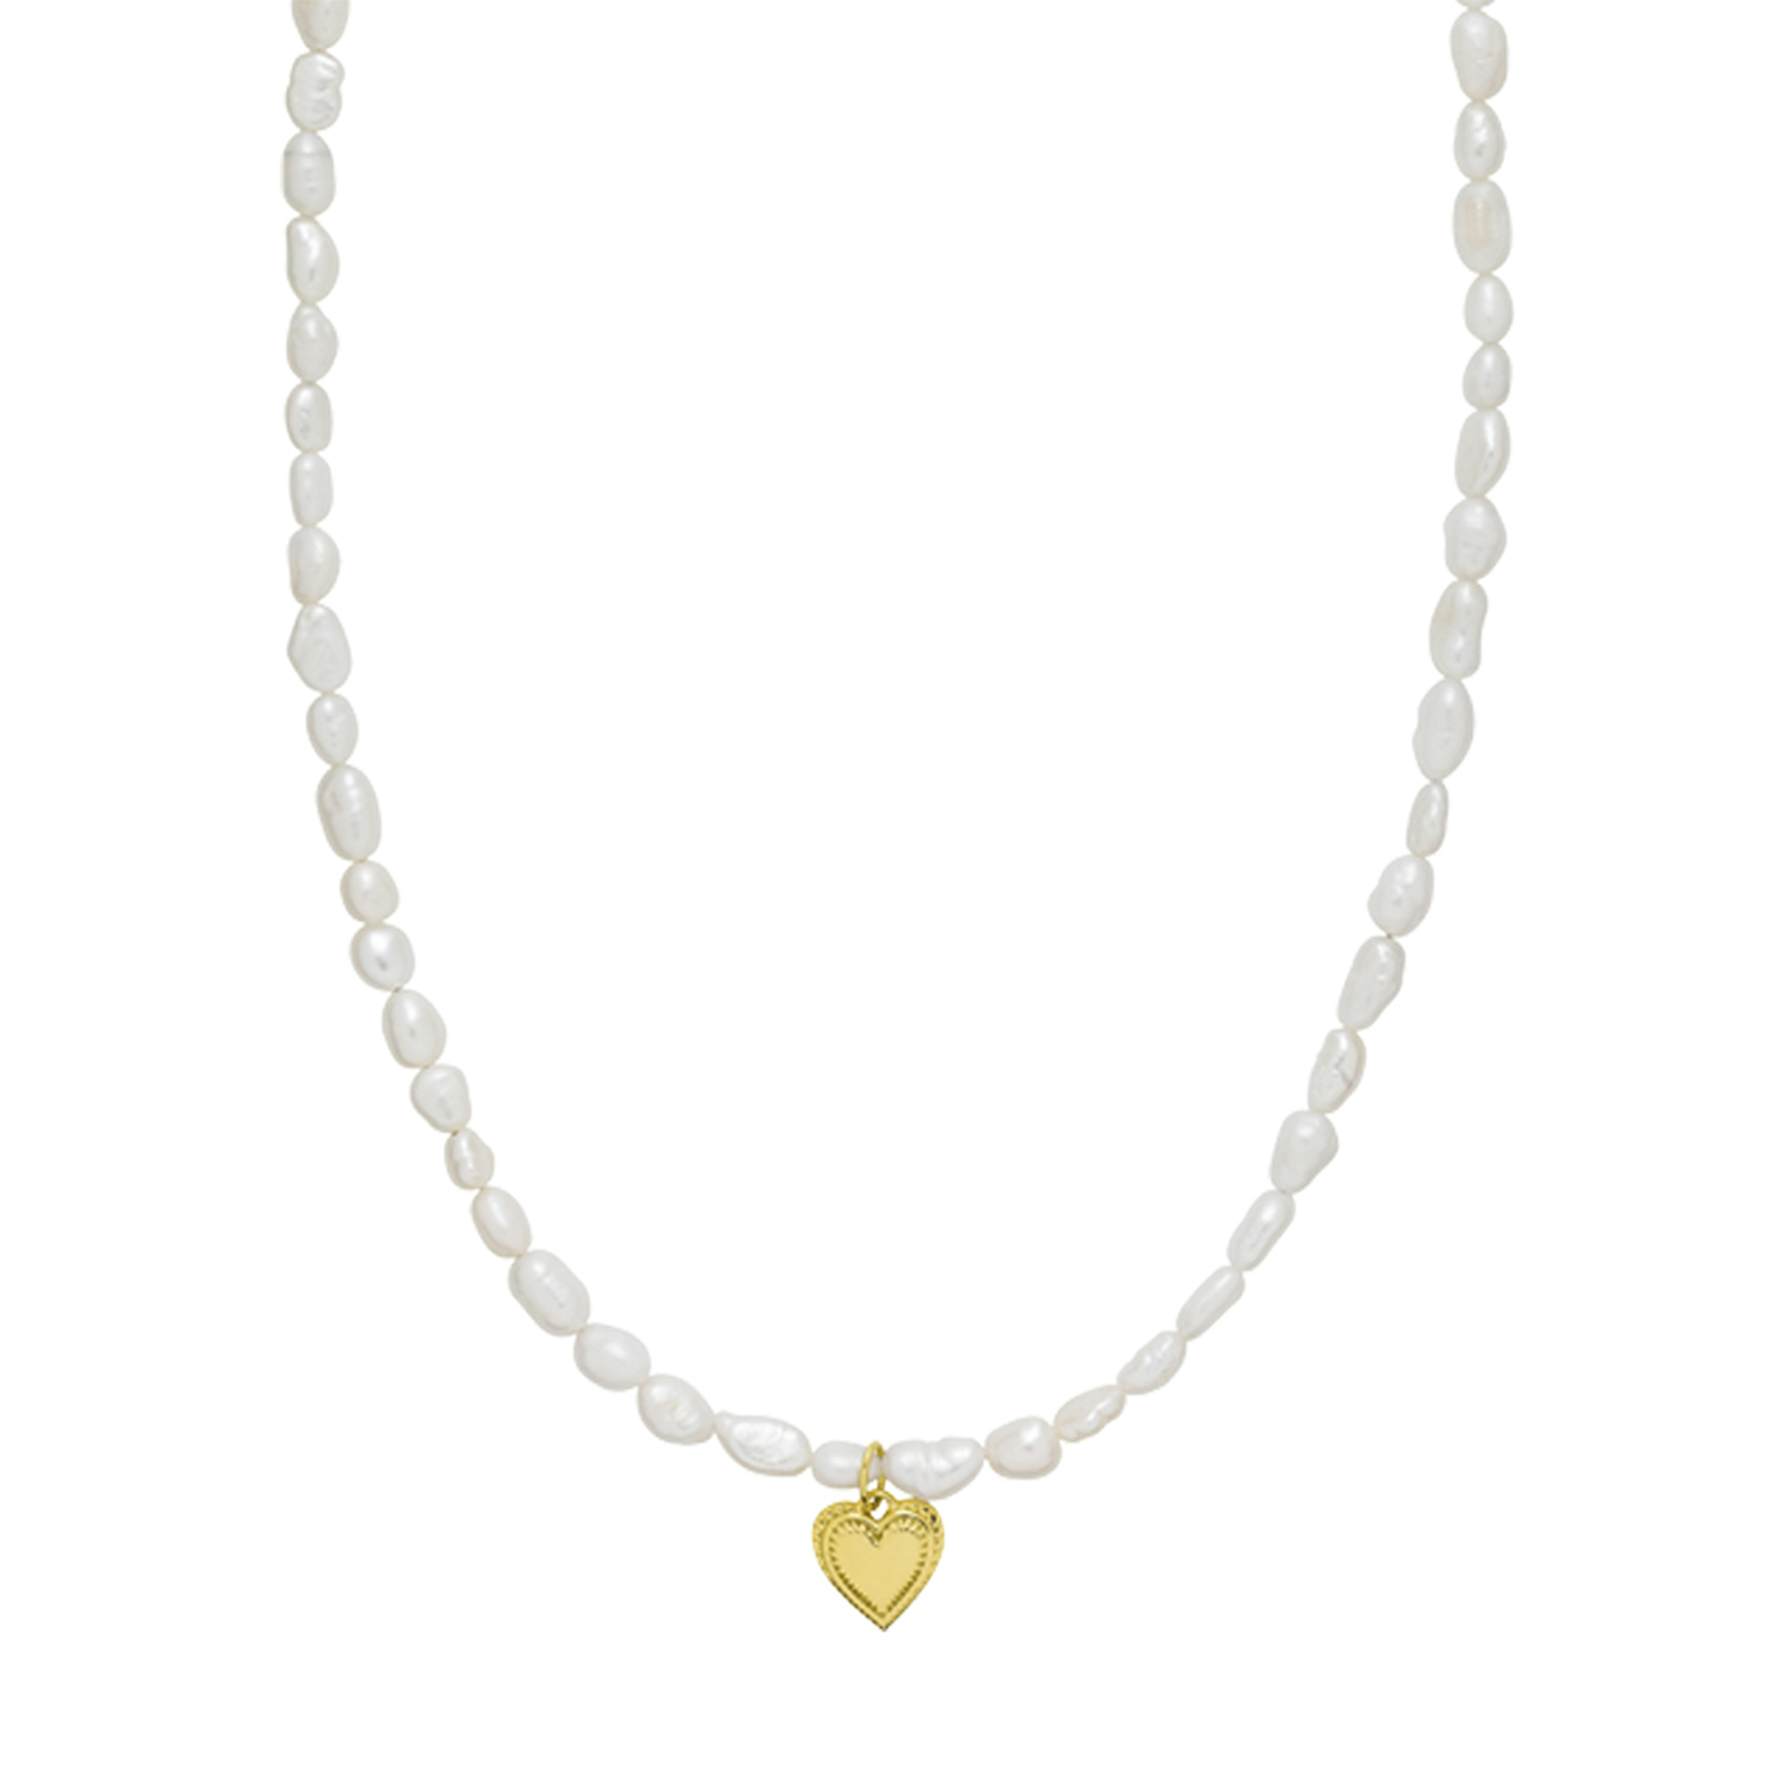 Anne-Sofie Krab x Sistie Heart Necklace von Sistie in Vergoldet-Silber Sterling 925